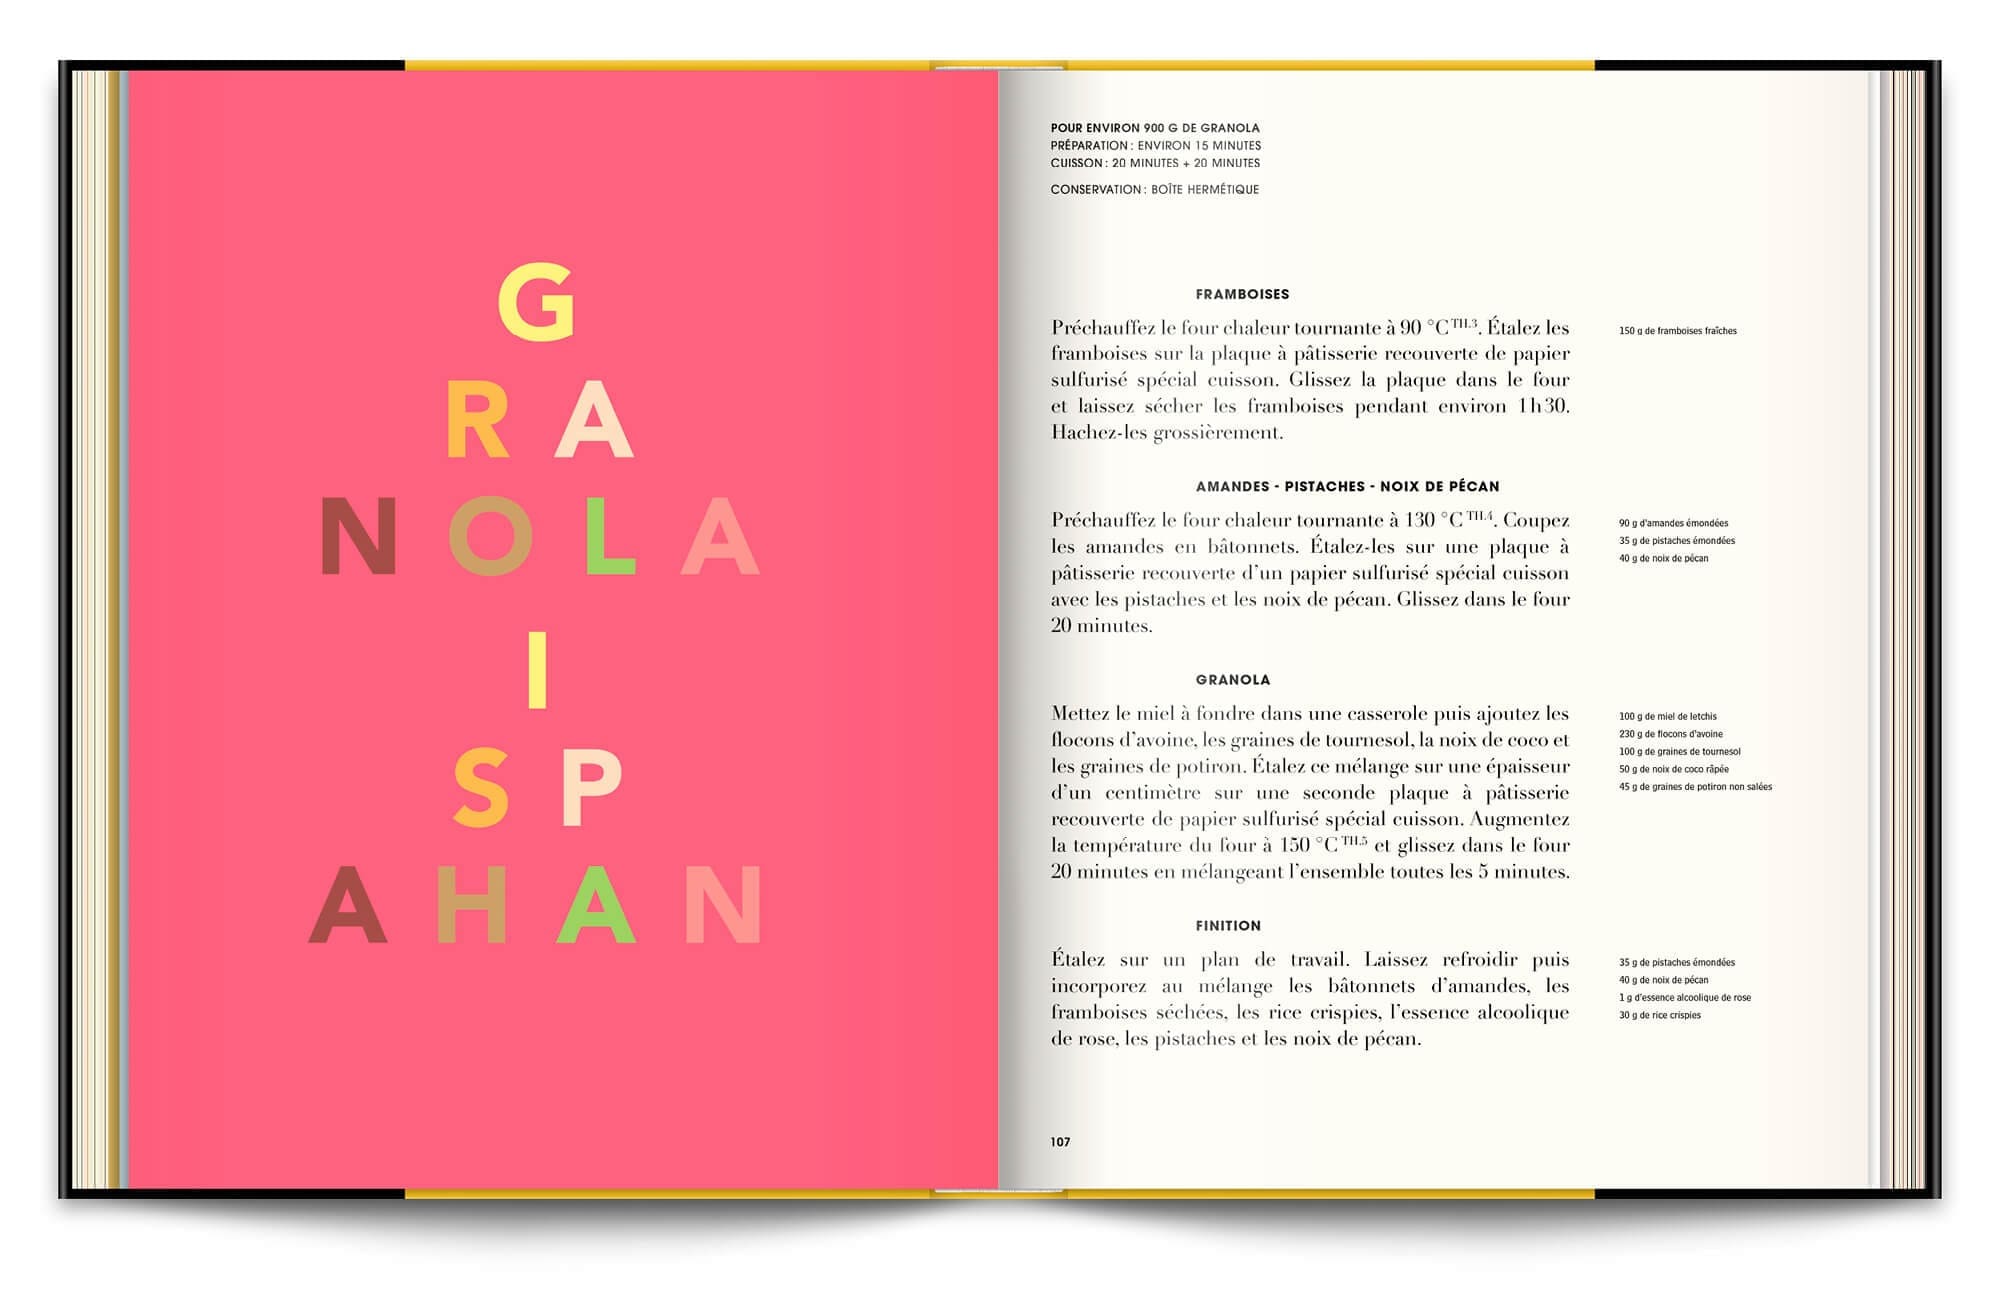 Le livre Infiniment de Pierre Hermé, typographie expressive et couleurs acidulées pour les pages de recettes, design éditorial IchetKar